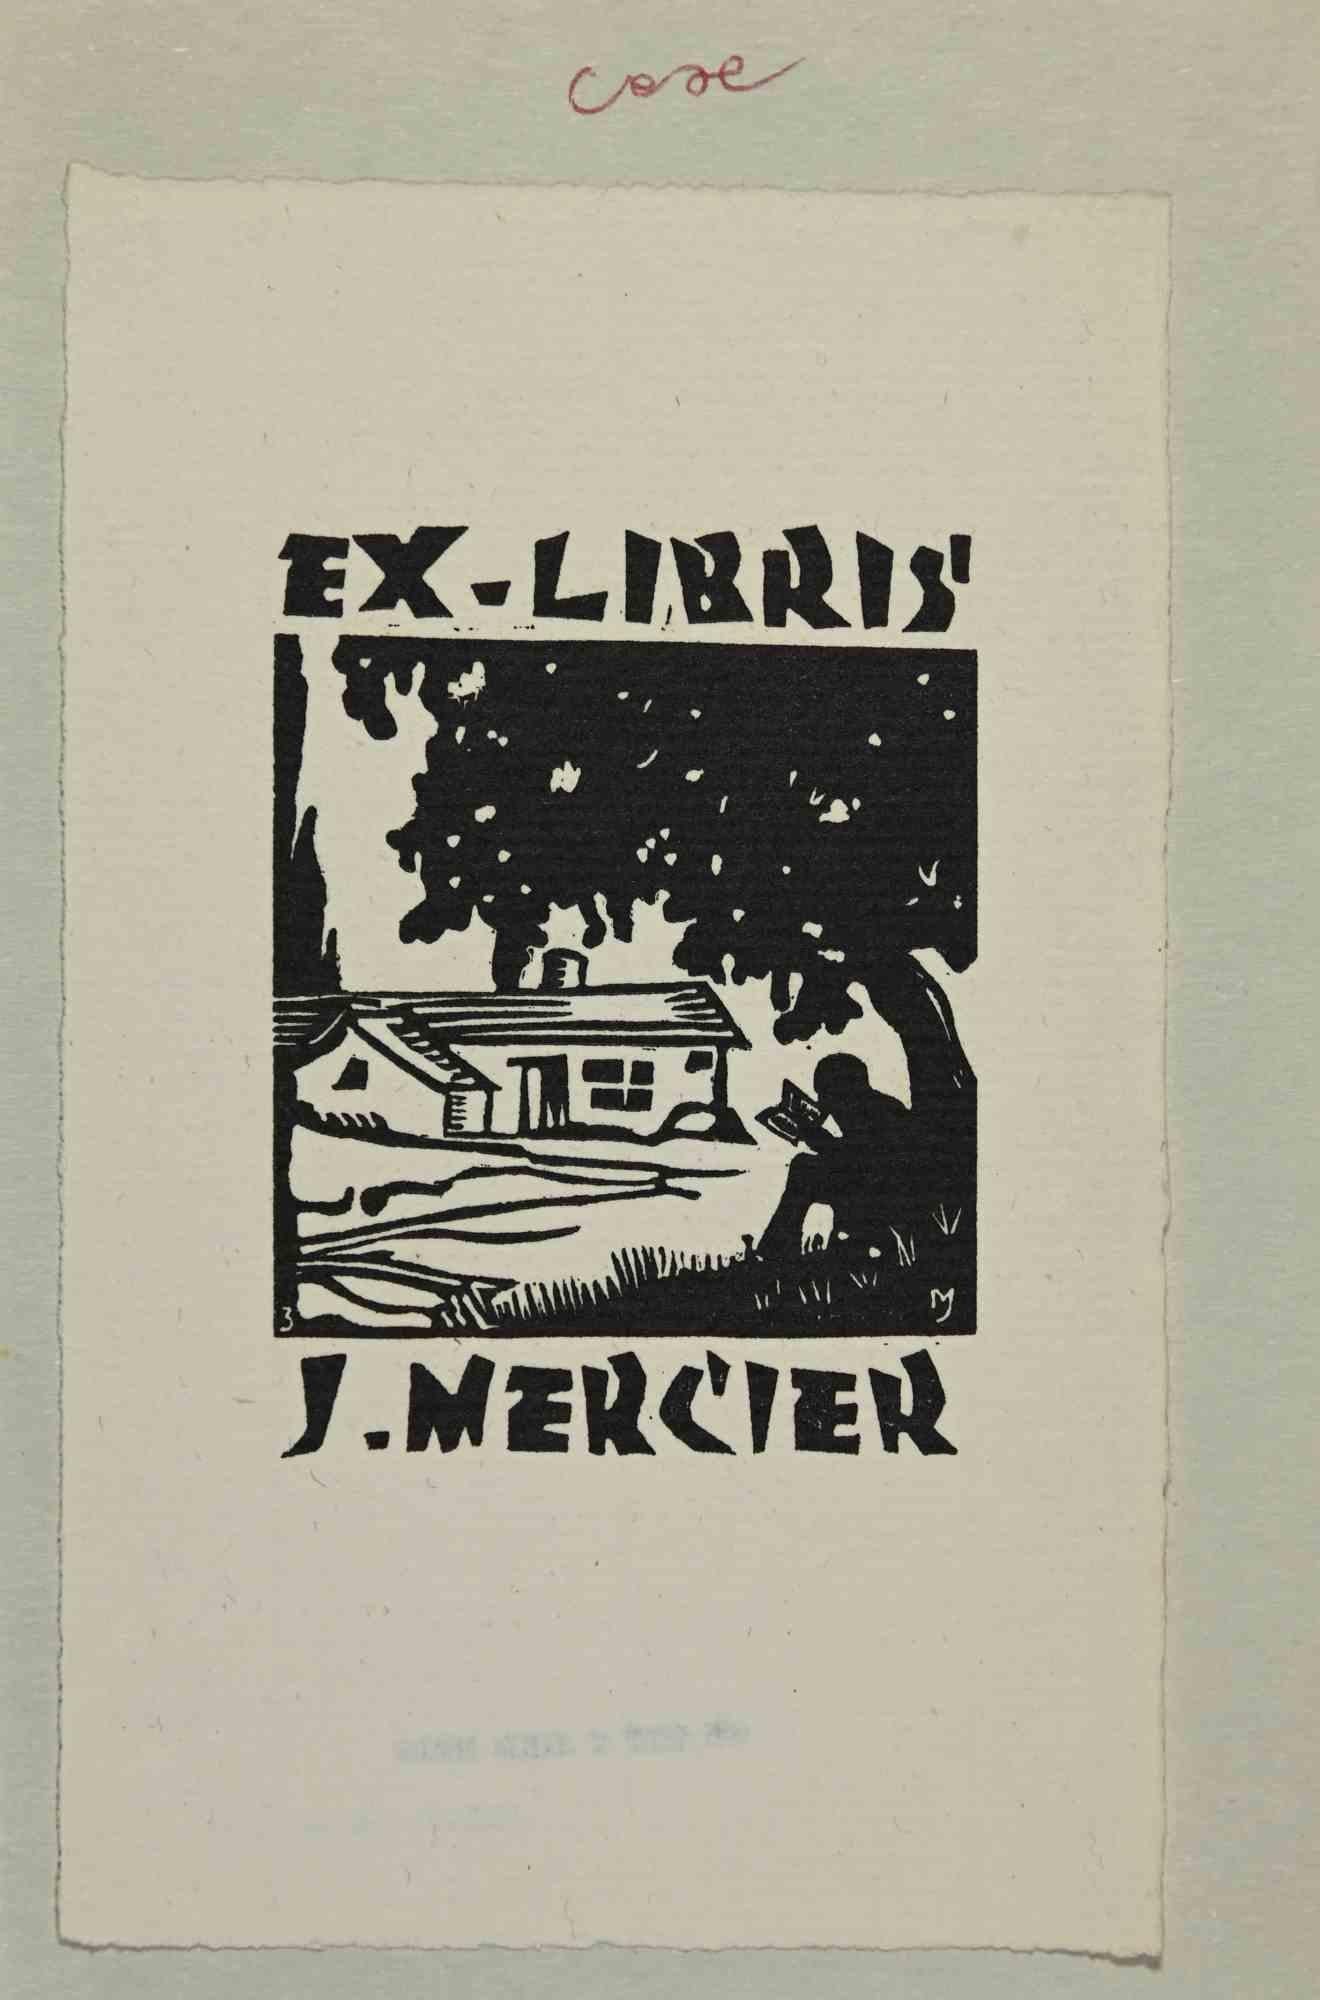 Unknown Figurative Print - Ex-Libris - J. Mercier - Woodcut by Jocelyn Mercier - 1957